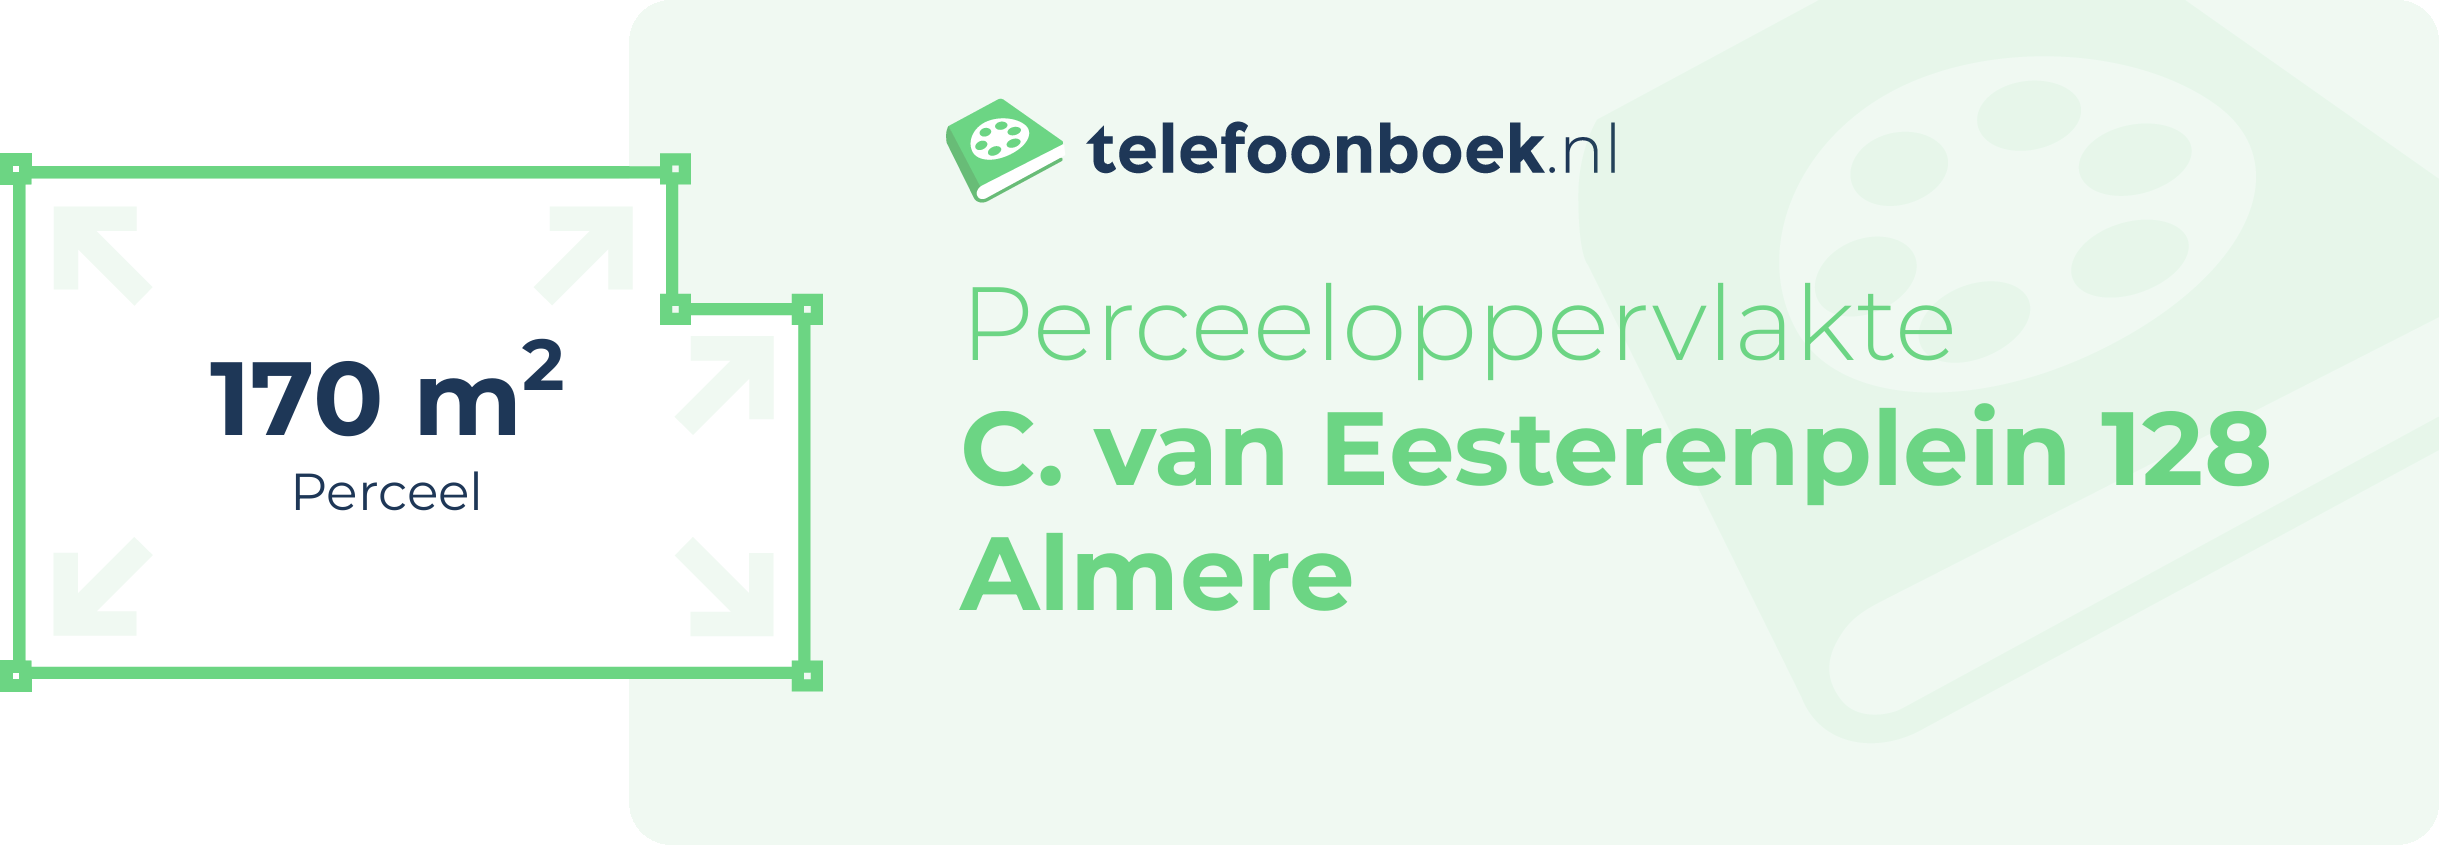 Perceeloppervlakte C. Van Eesterenplein 128 Almere